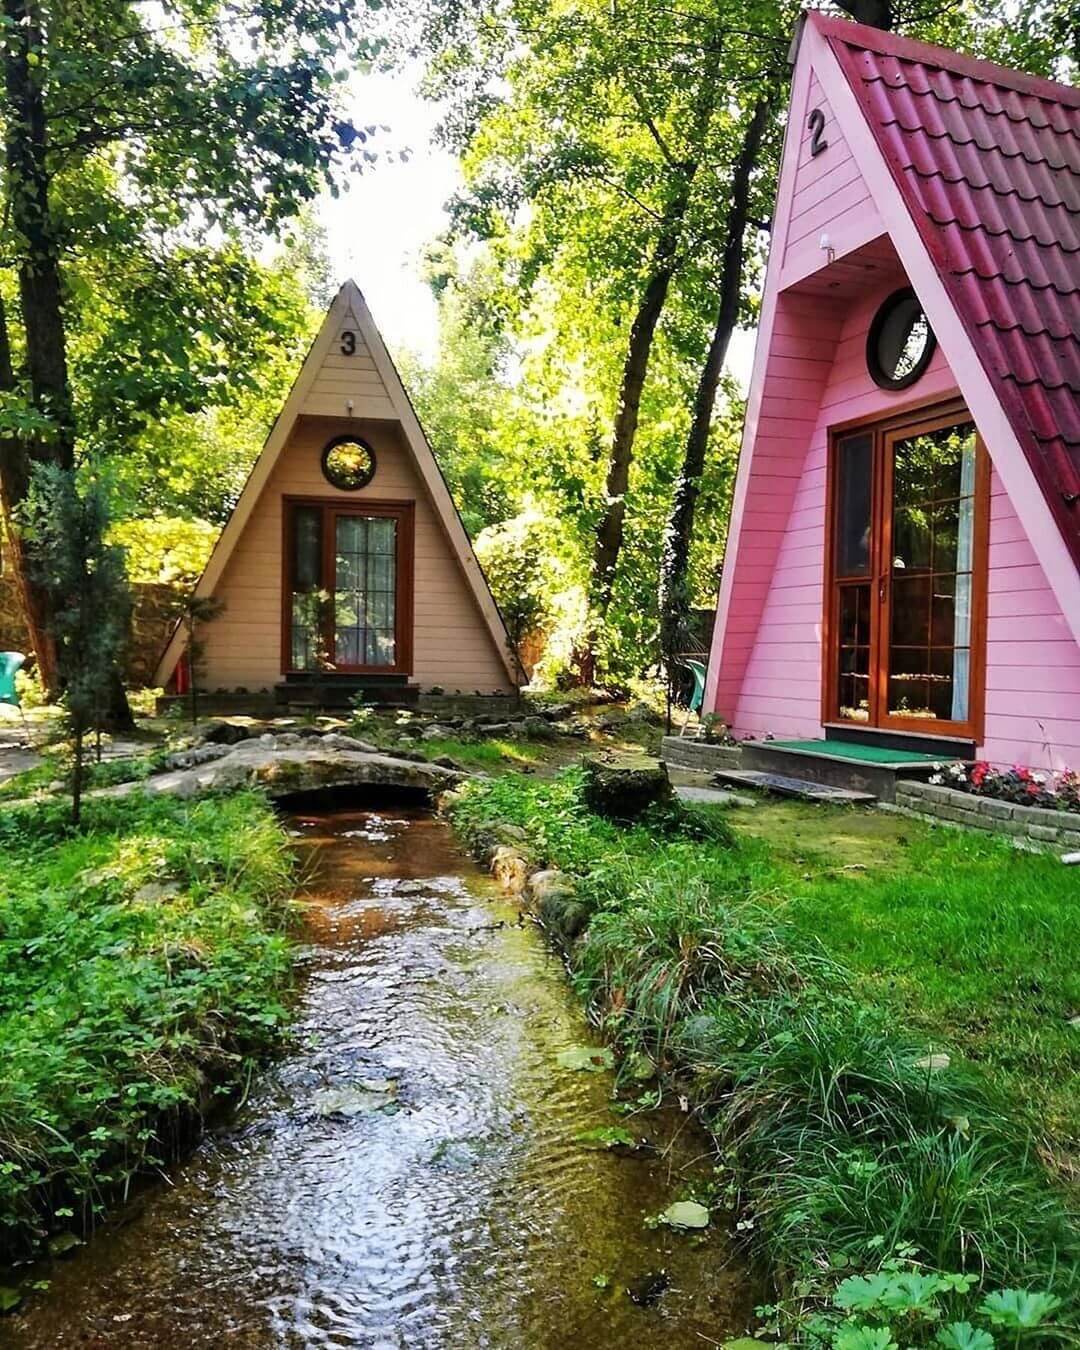 imparatorluk etrafta yurumek gercek bungalow tatil yerleri turkiye lonegrovedentist com